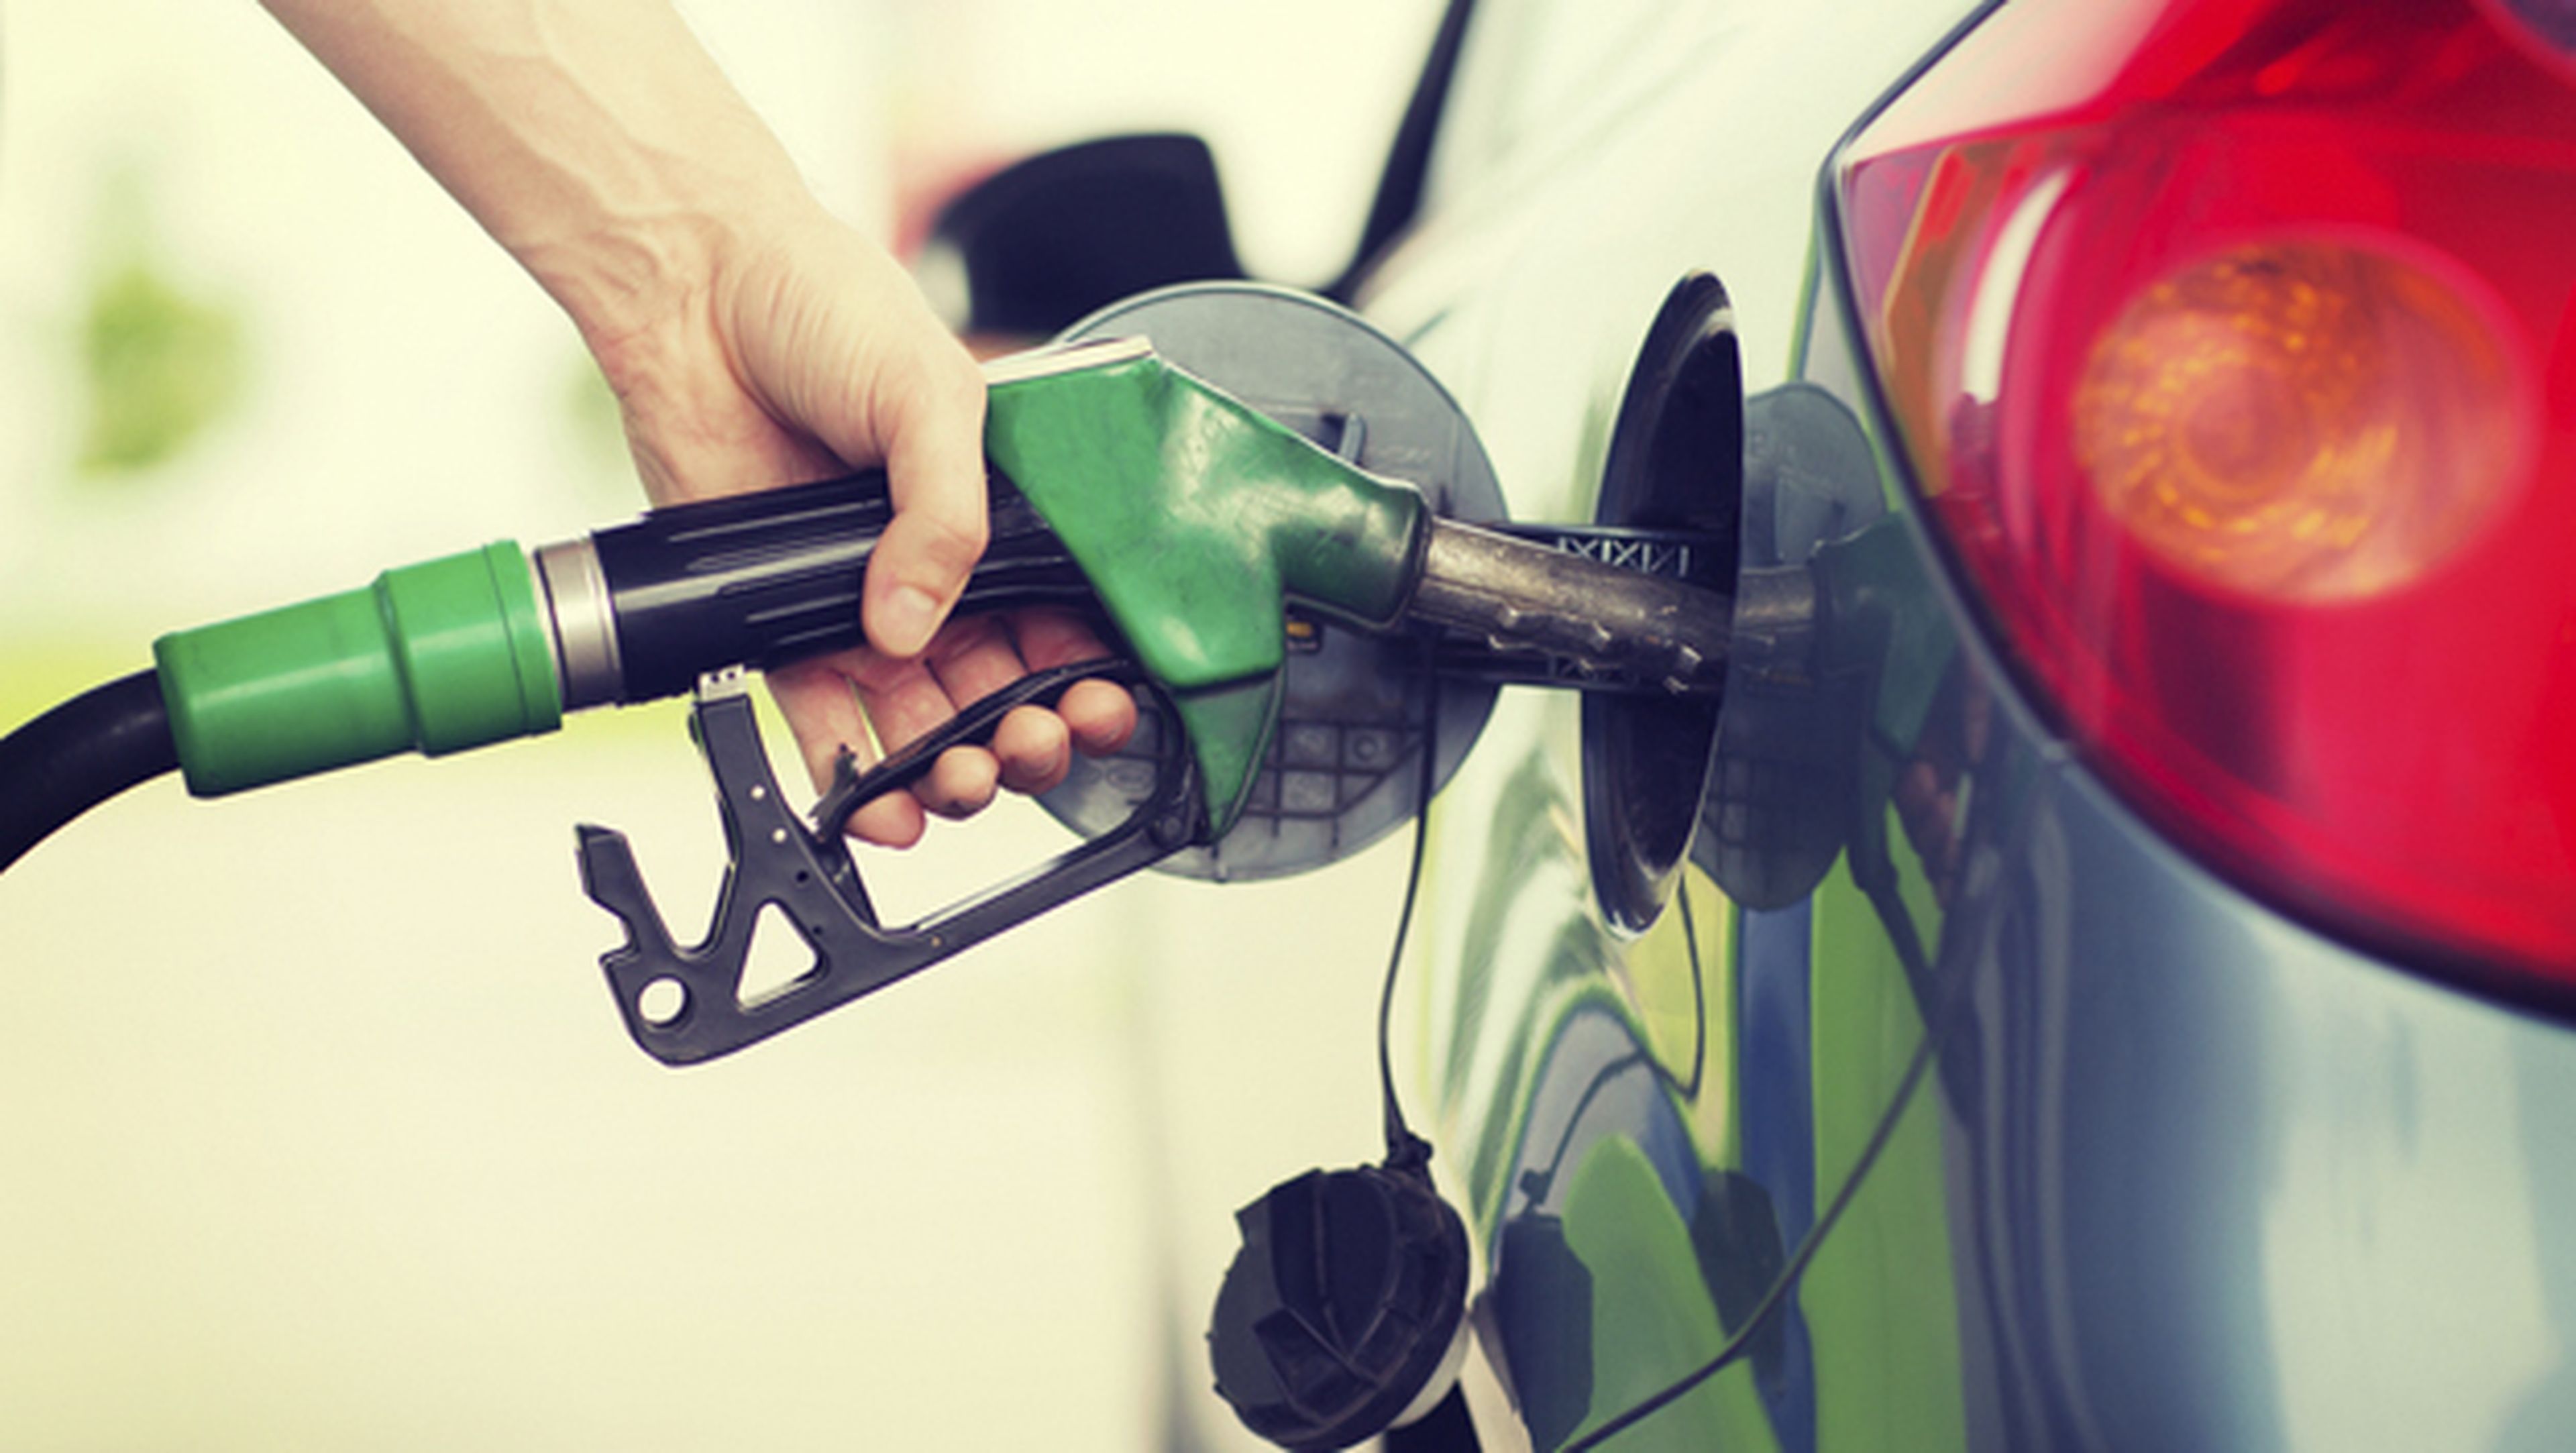 Trucos y consejos para ahorrar dinero en gasolina para el coche